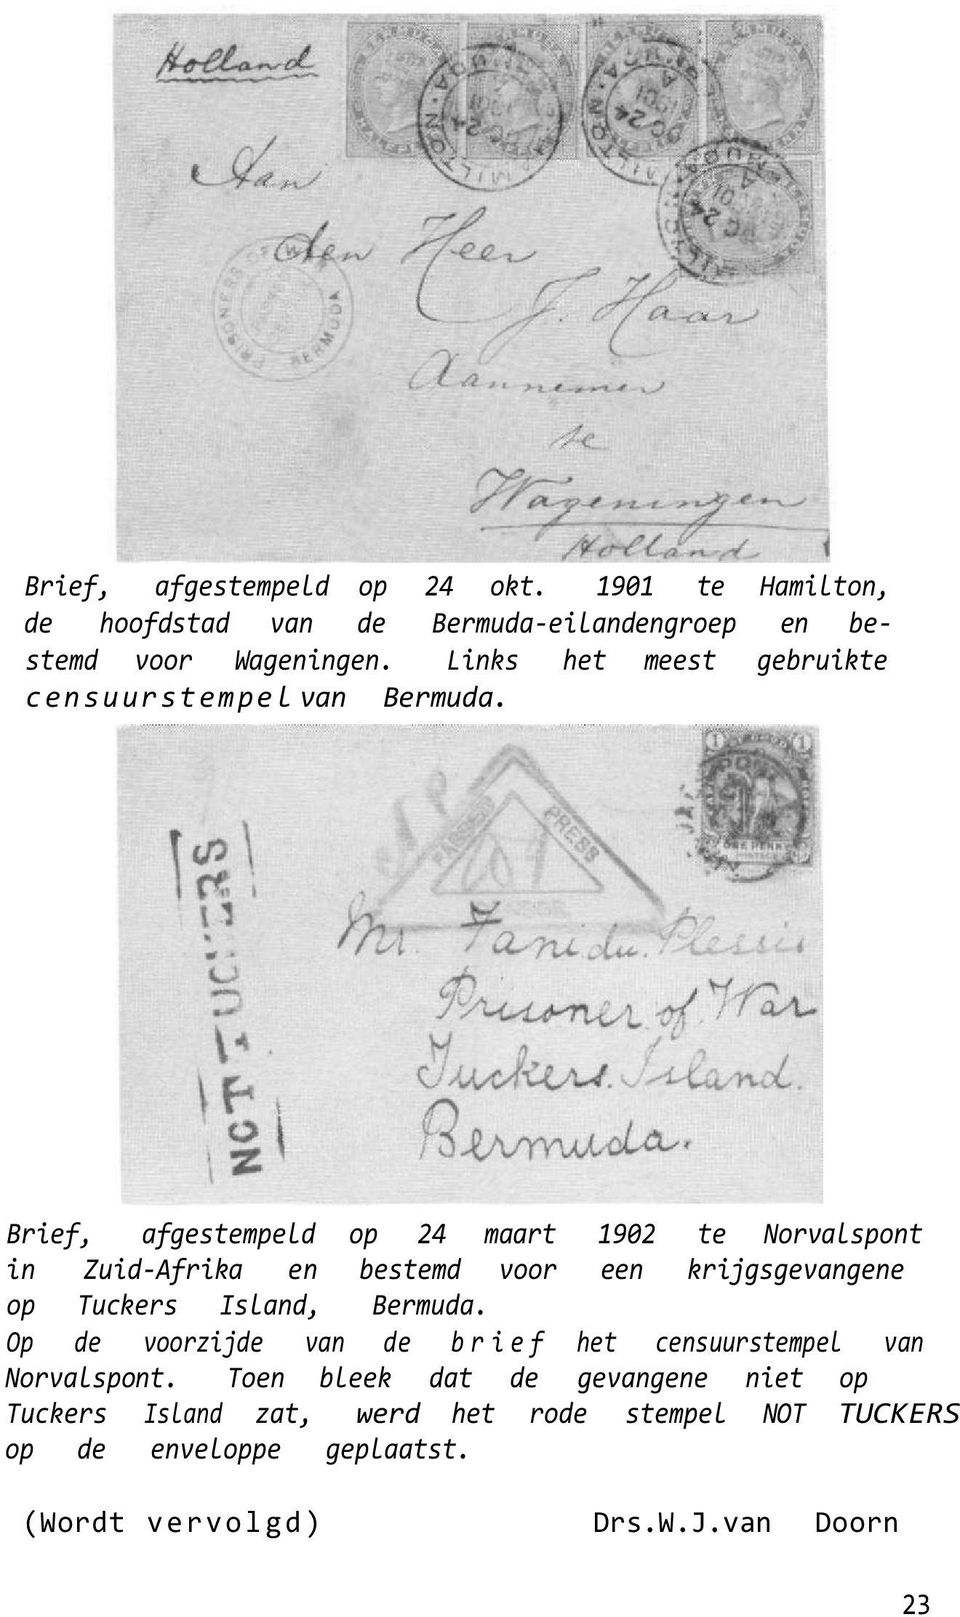 Brief, afgestempeld op 24 maart 1902 te Norvalspont in Zuid-Afrika en bestemd voor een krijgsgevangene op Tuckers Island, Bermuda.